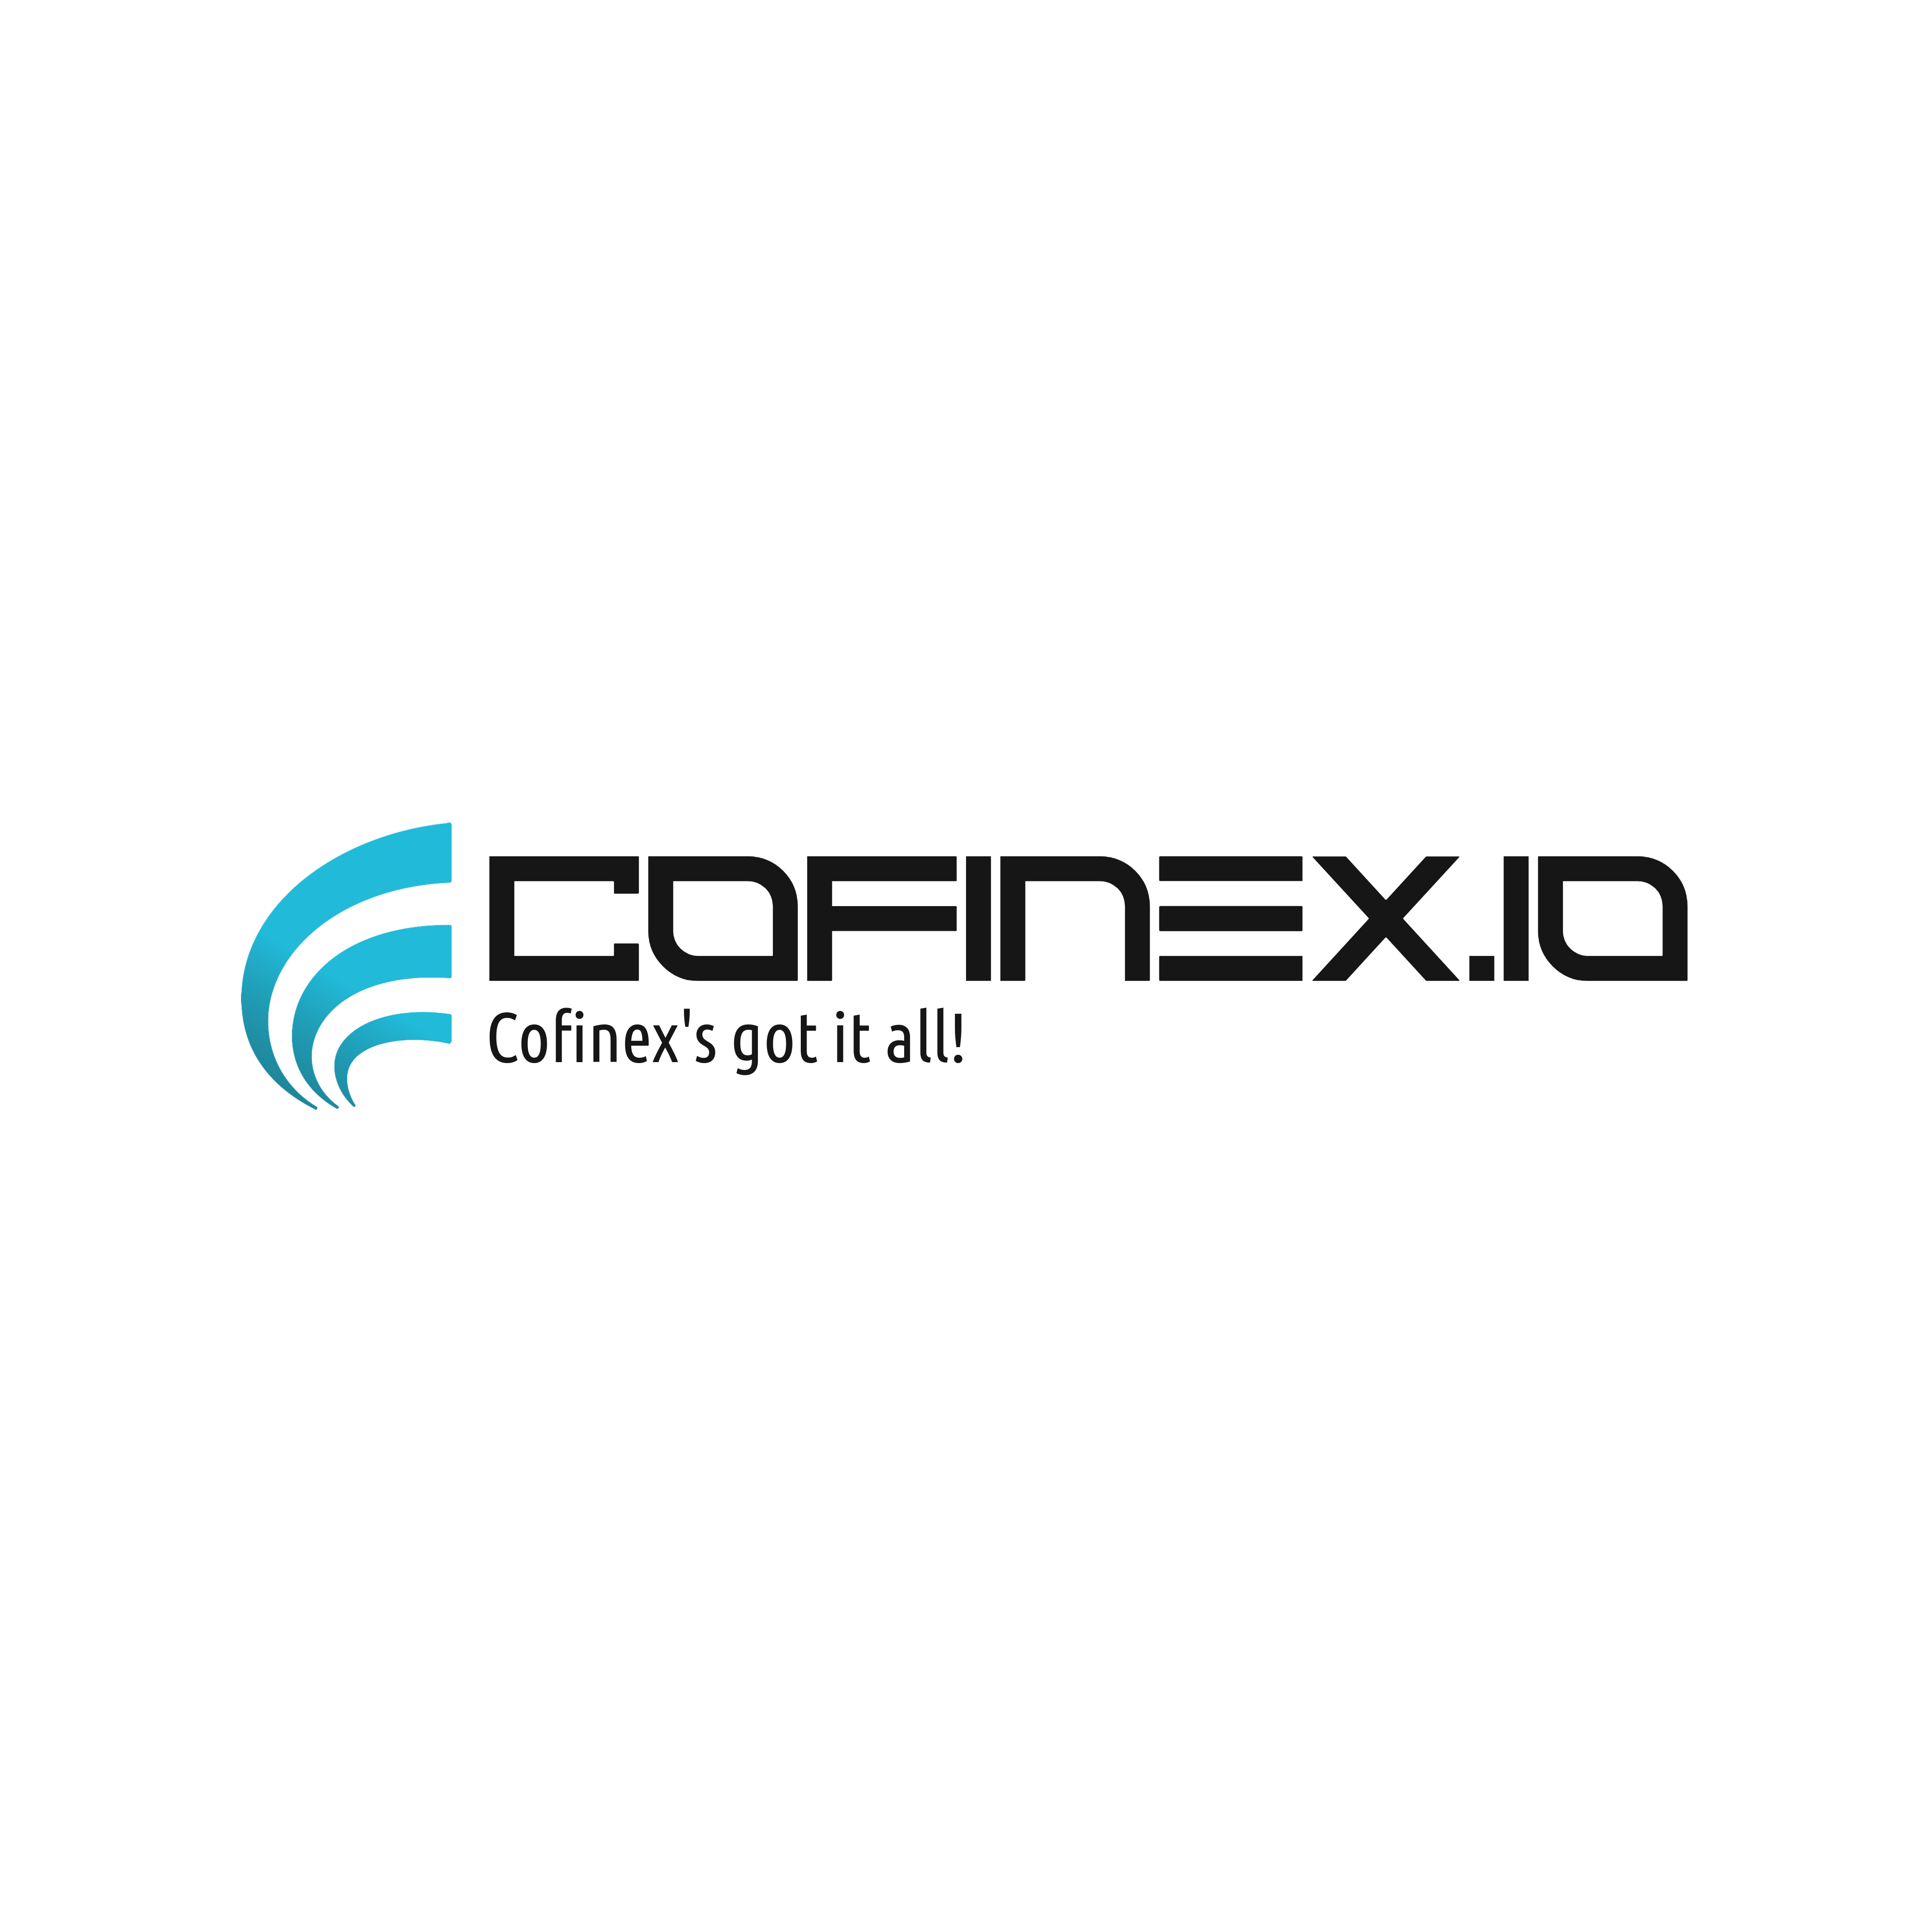 Cofinex Coin logo